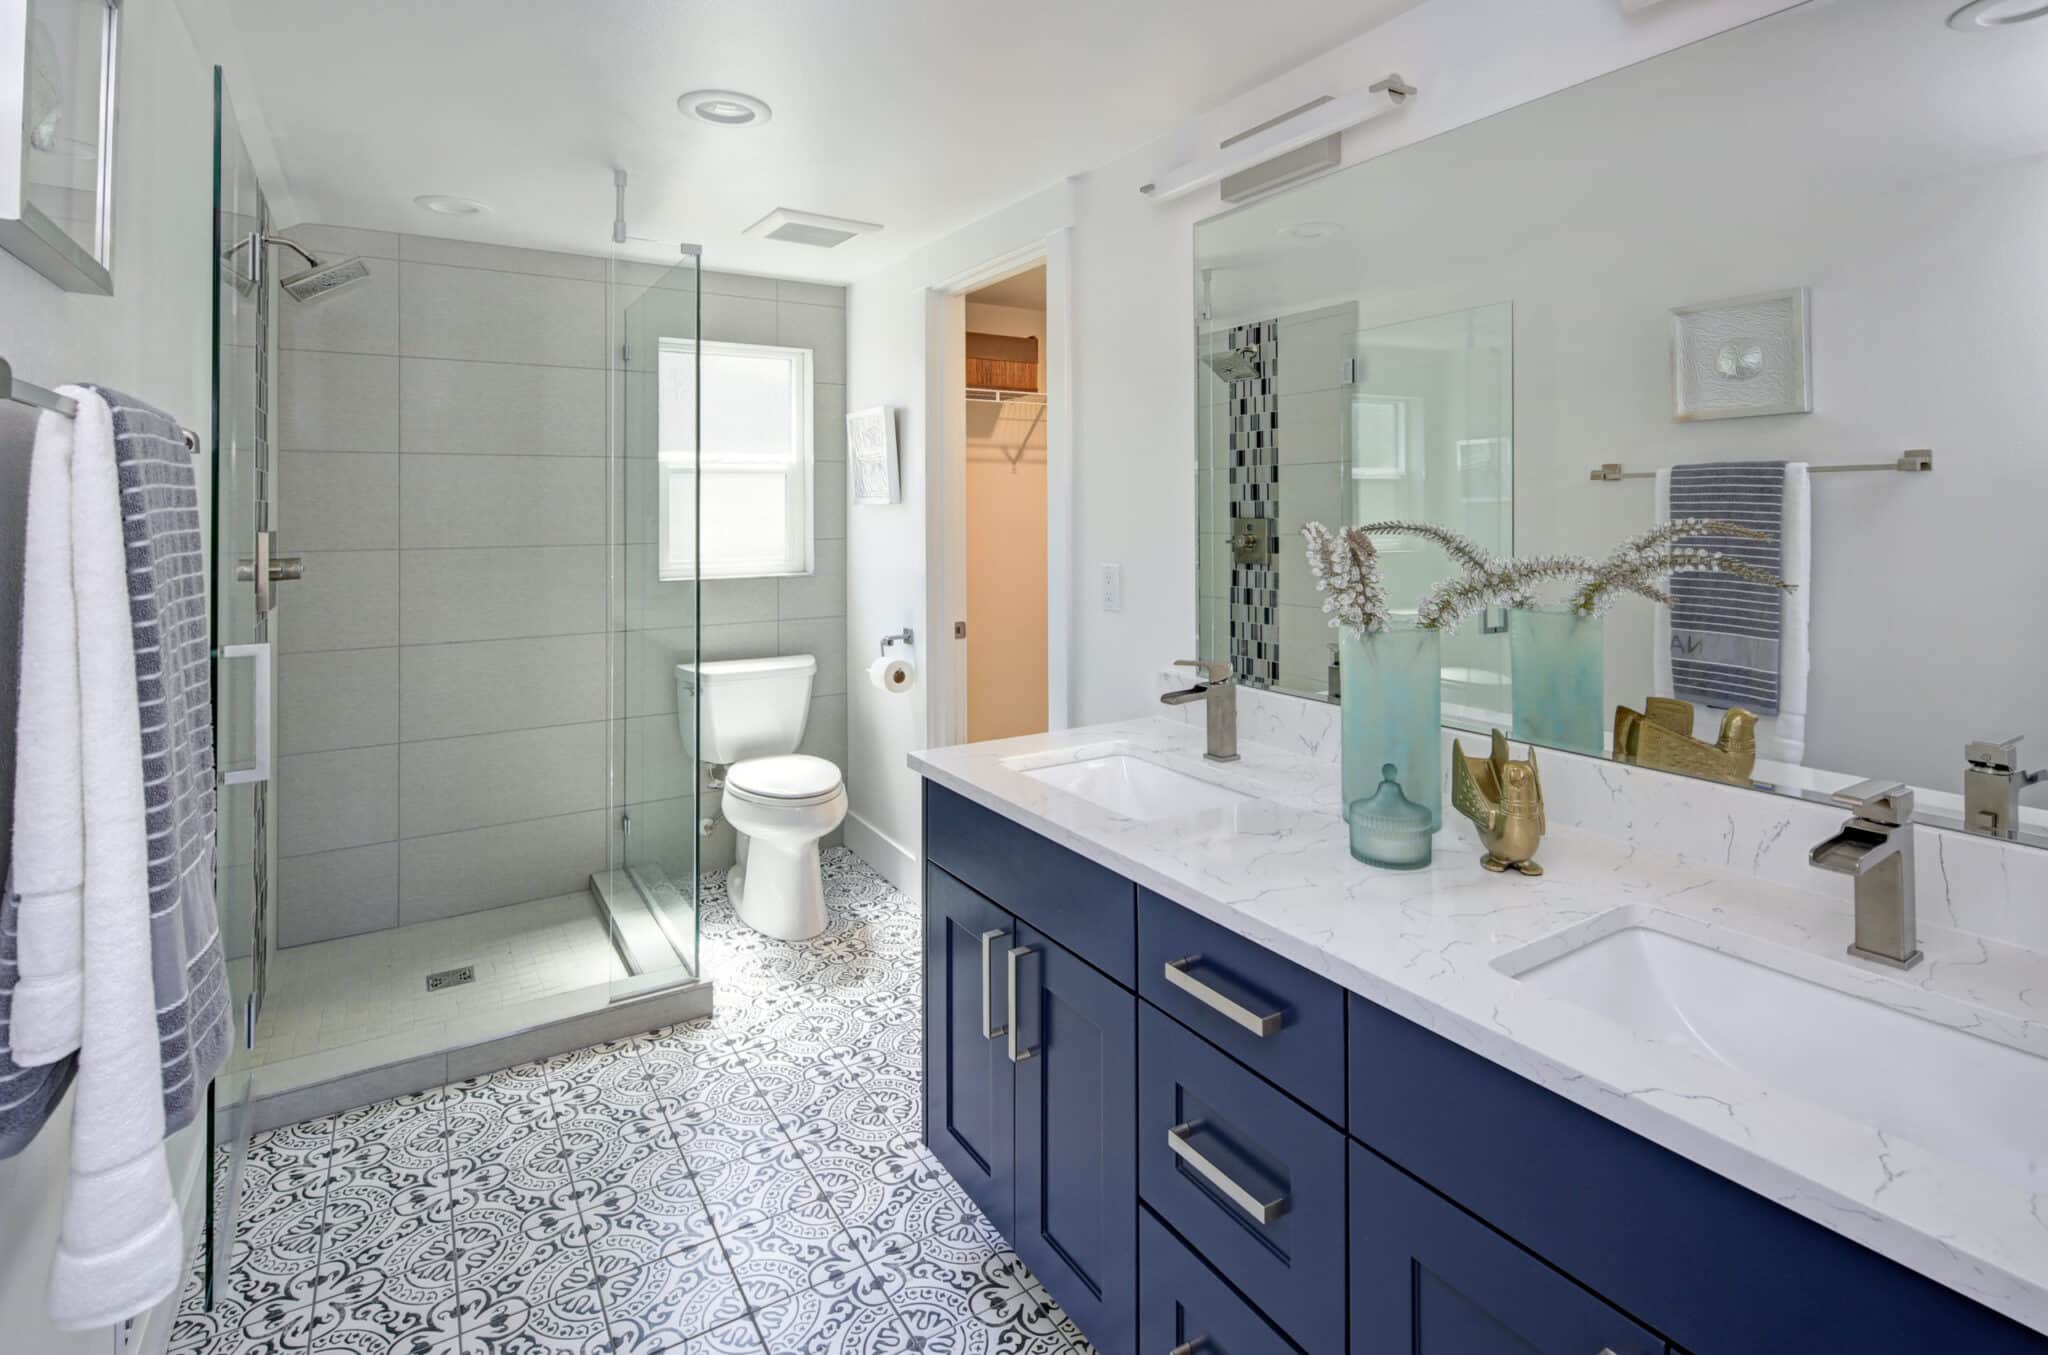 Updated bathroom tiled floors and frameless shower.